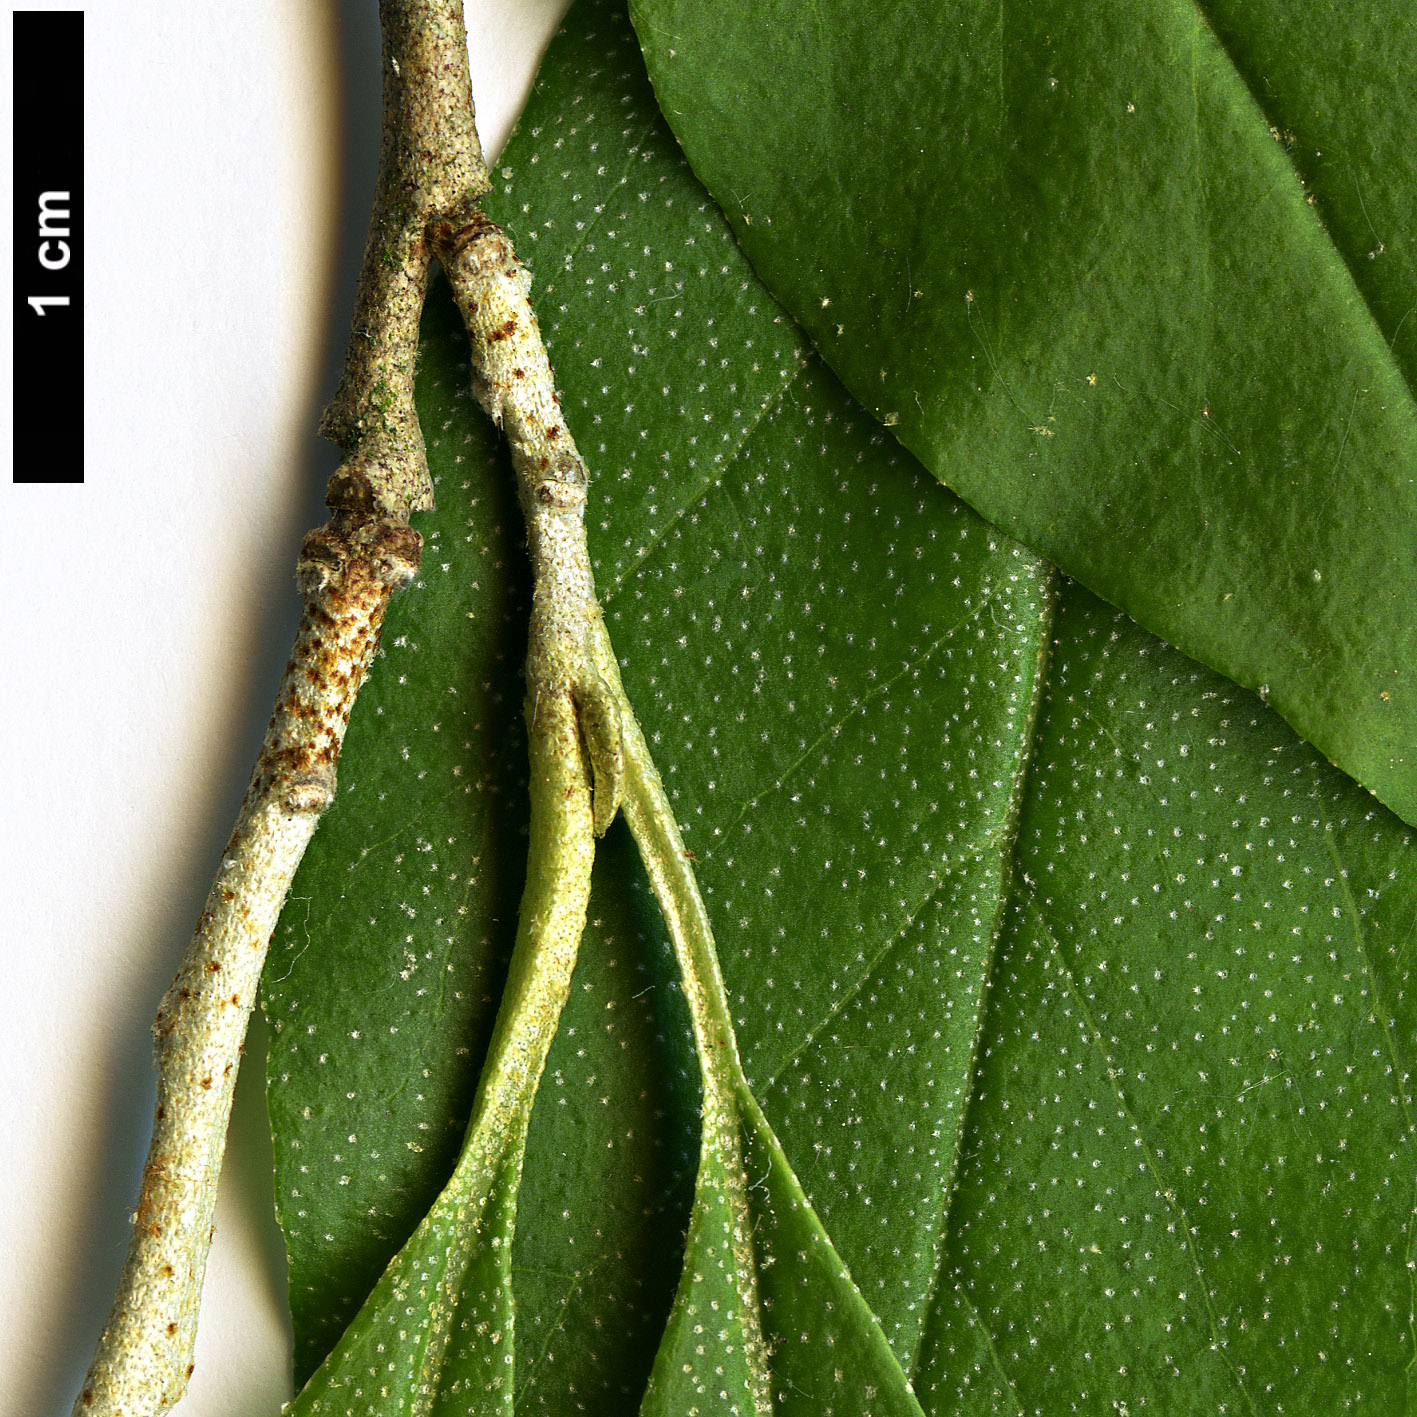 High resolution image: Family: Elaeagnaceae - Genus: Elaeagnus - Taxon: multiflora